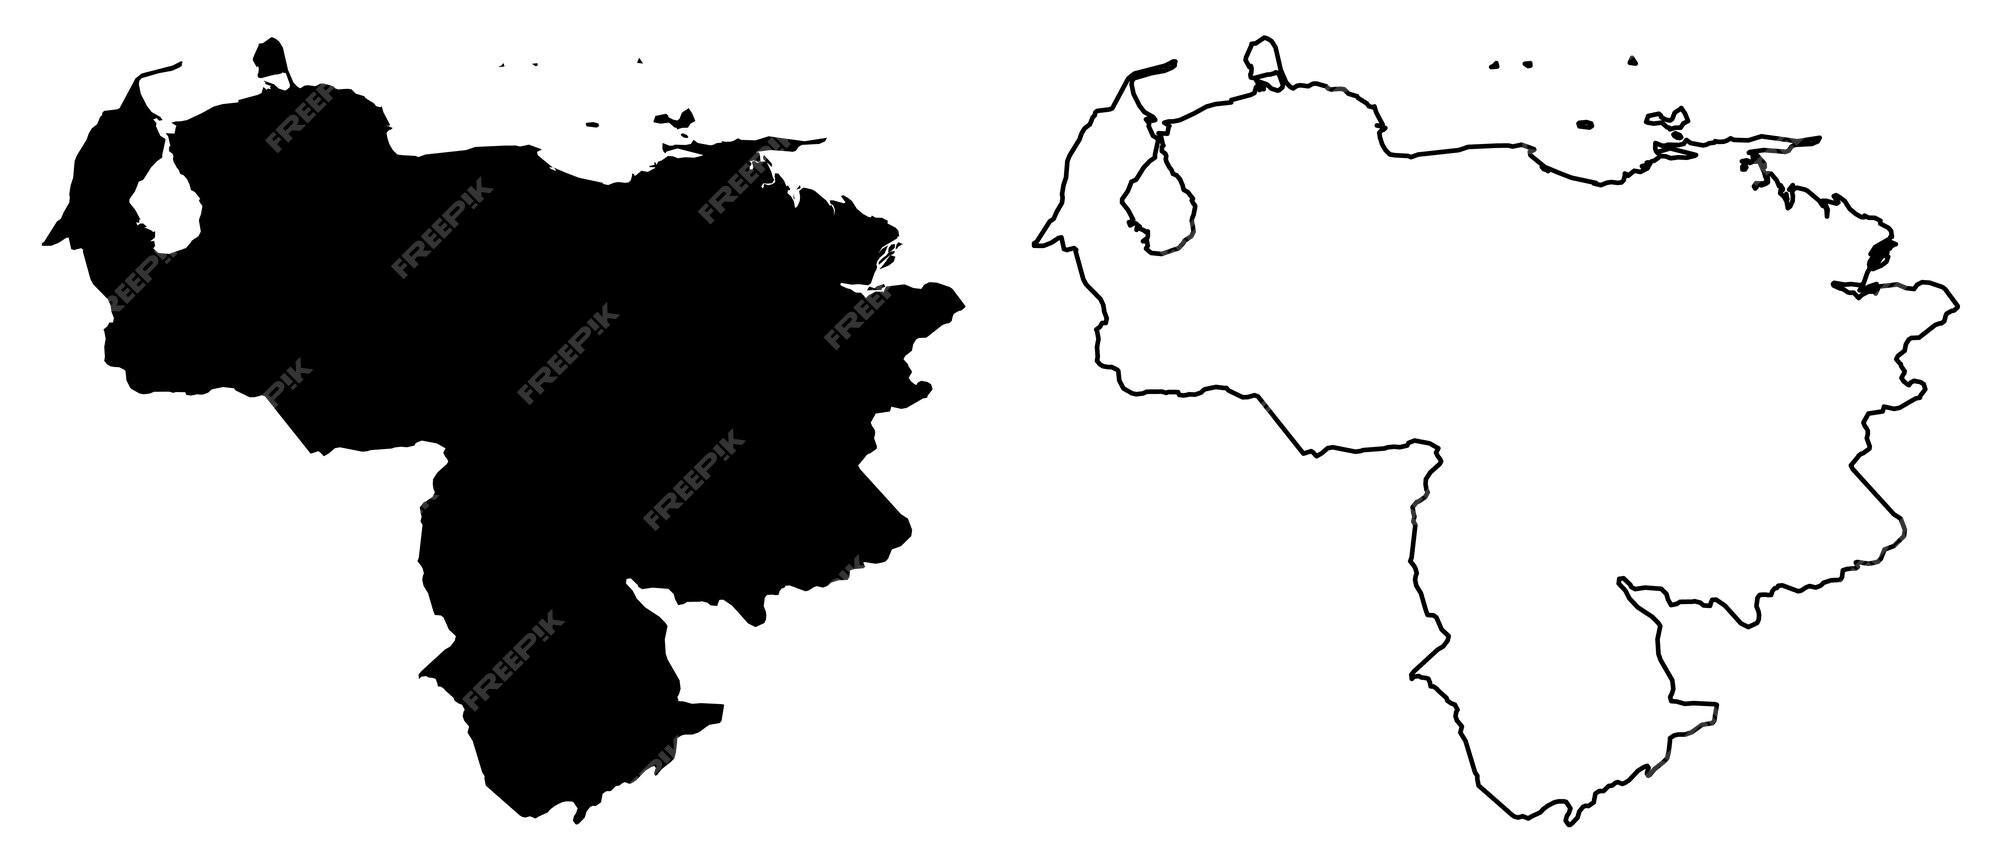 Mapa simples (apenas cantos afiados) do desenho vetorial de portugal.  projeção de mercator. versão preenchida e delineada.